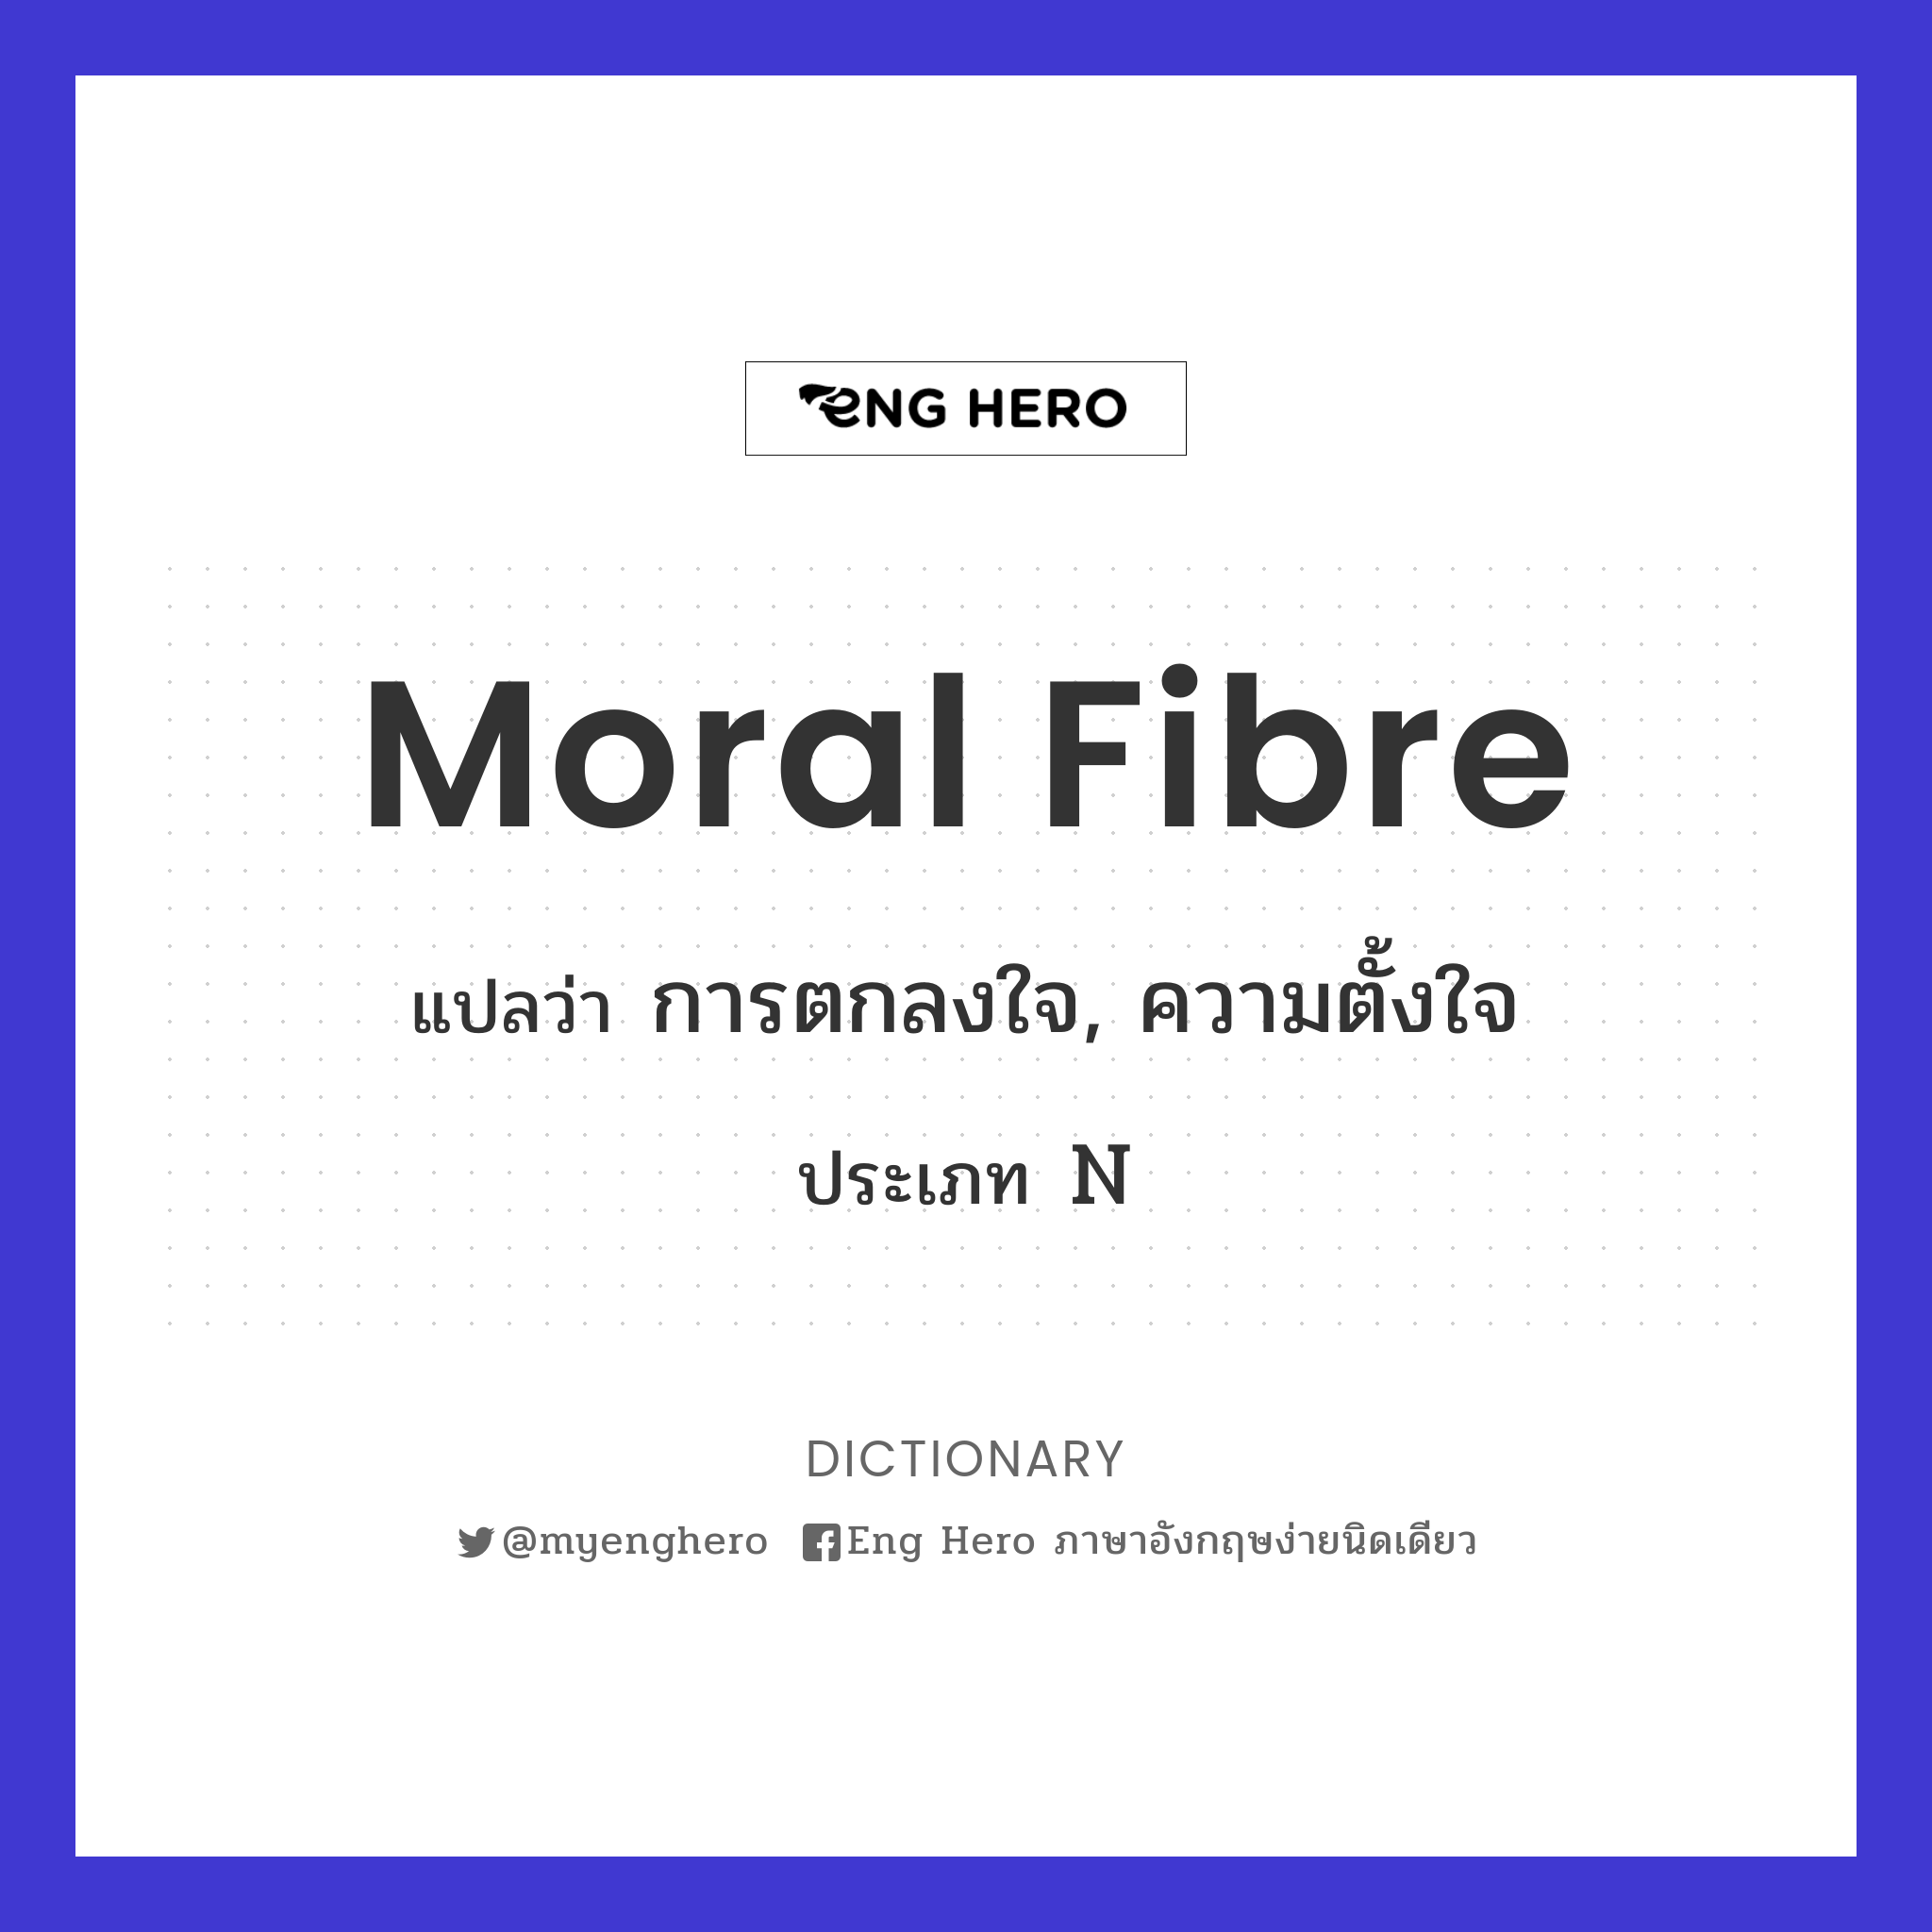 moral fibre